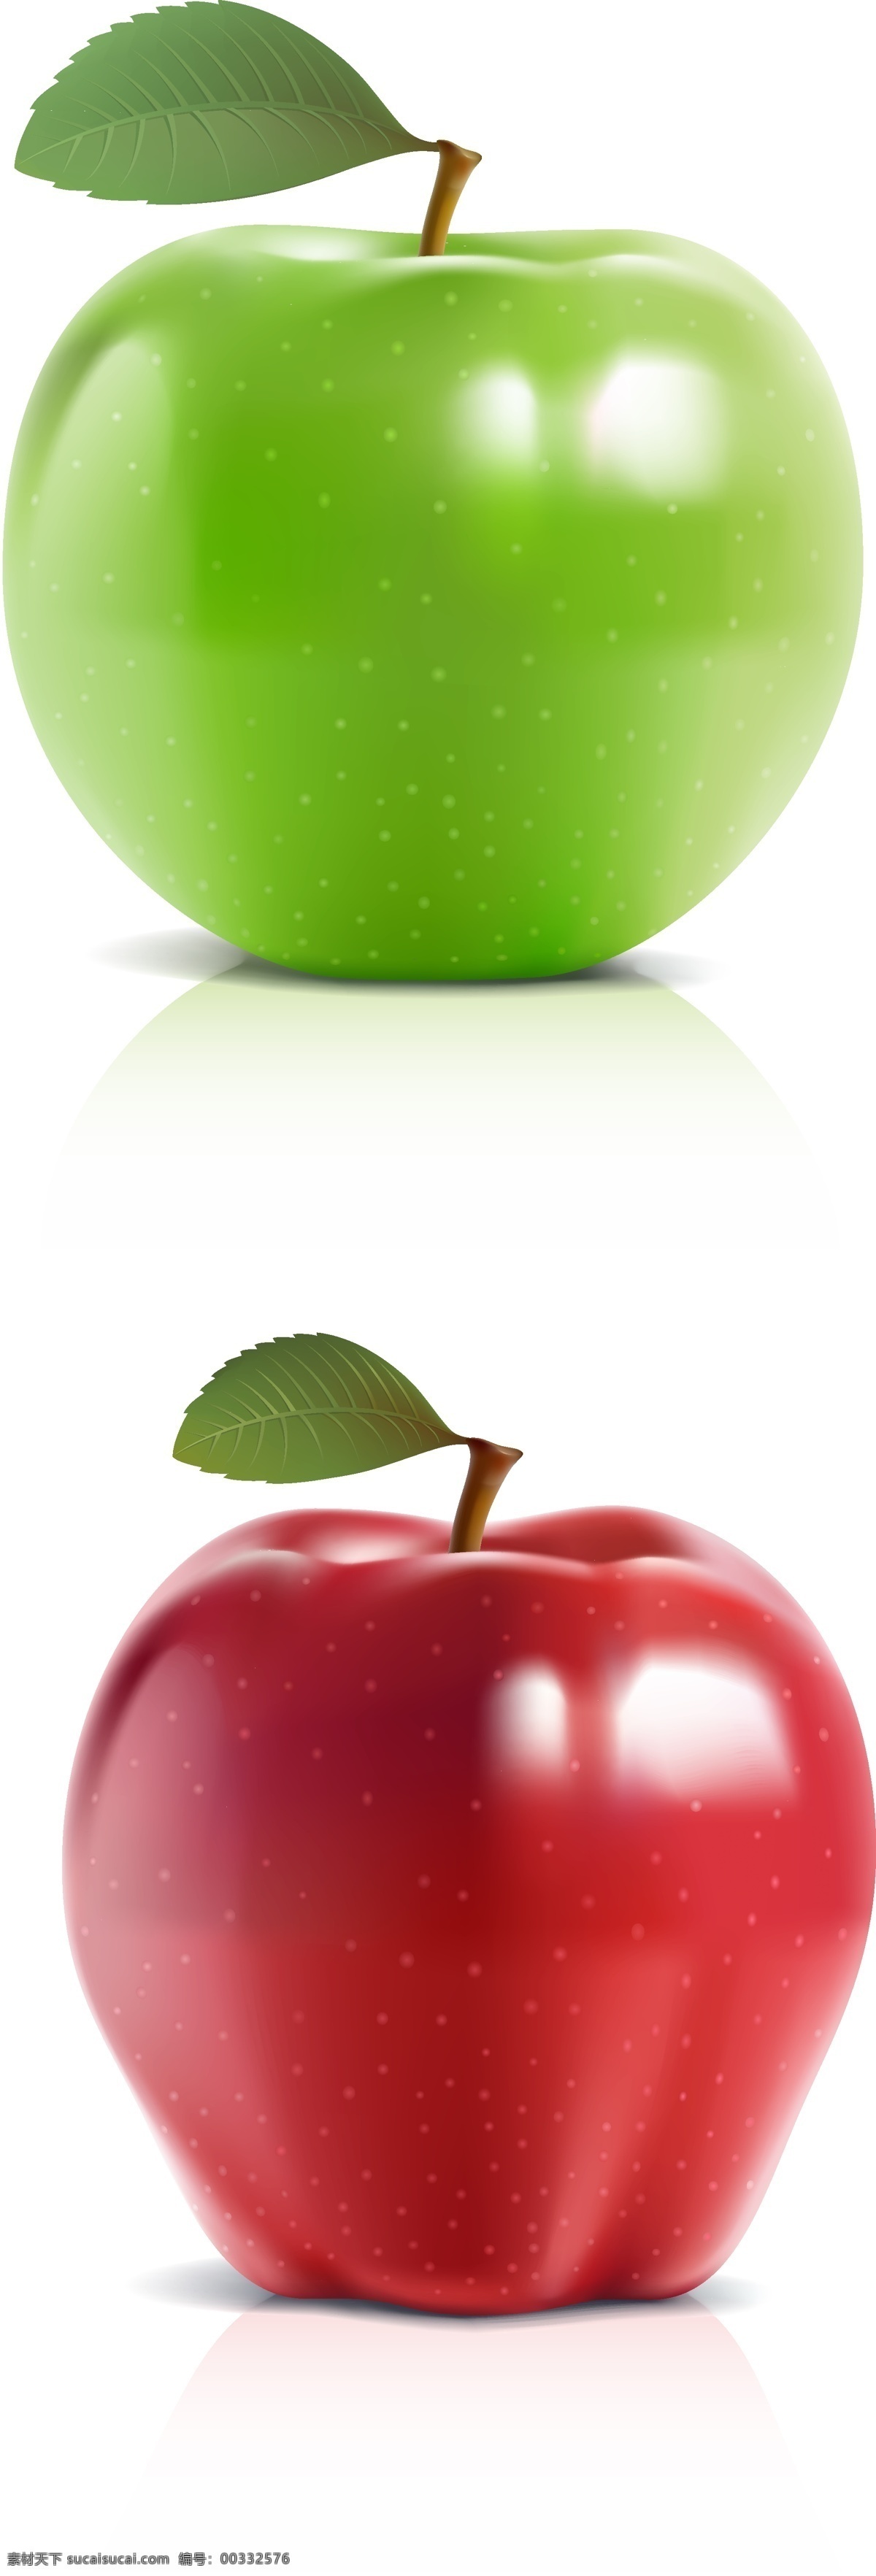 苹果 生物世界 矢量水果 矢量图库 水果 写真 新鲜 叶子 红苹果 青苹果 矢量 模板下载 细腻 水灵 蔬菜 花朵